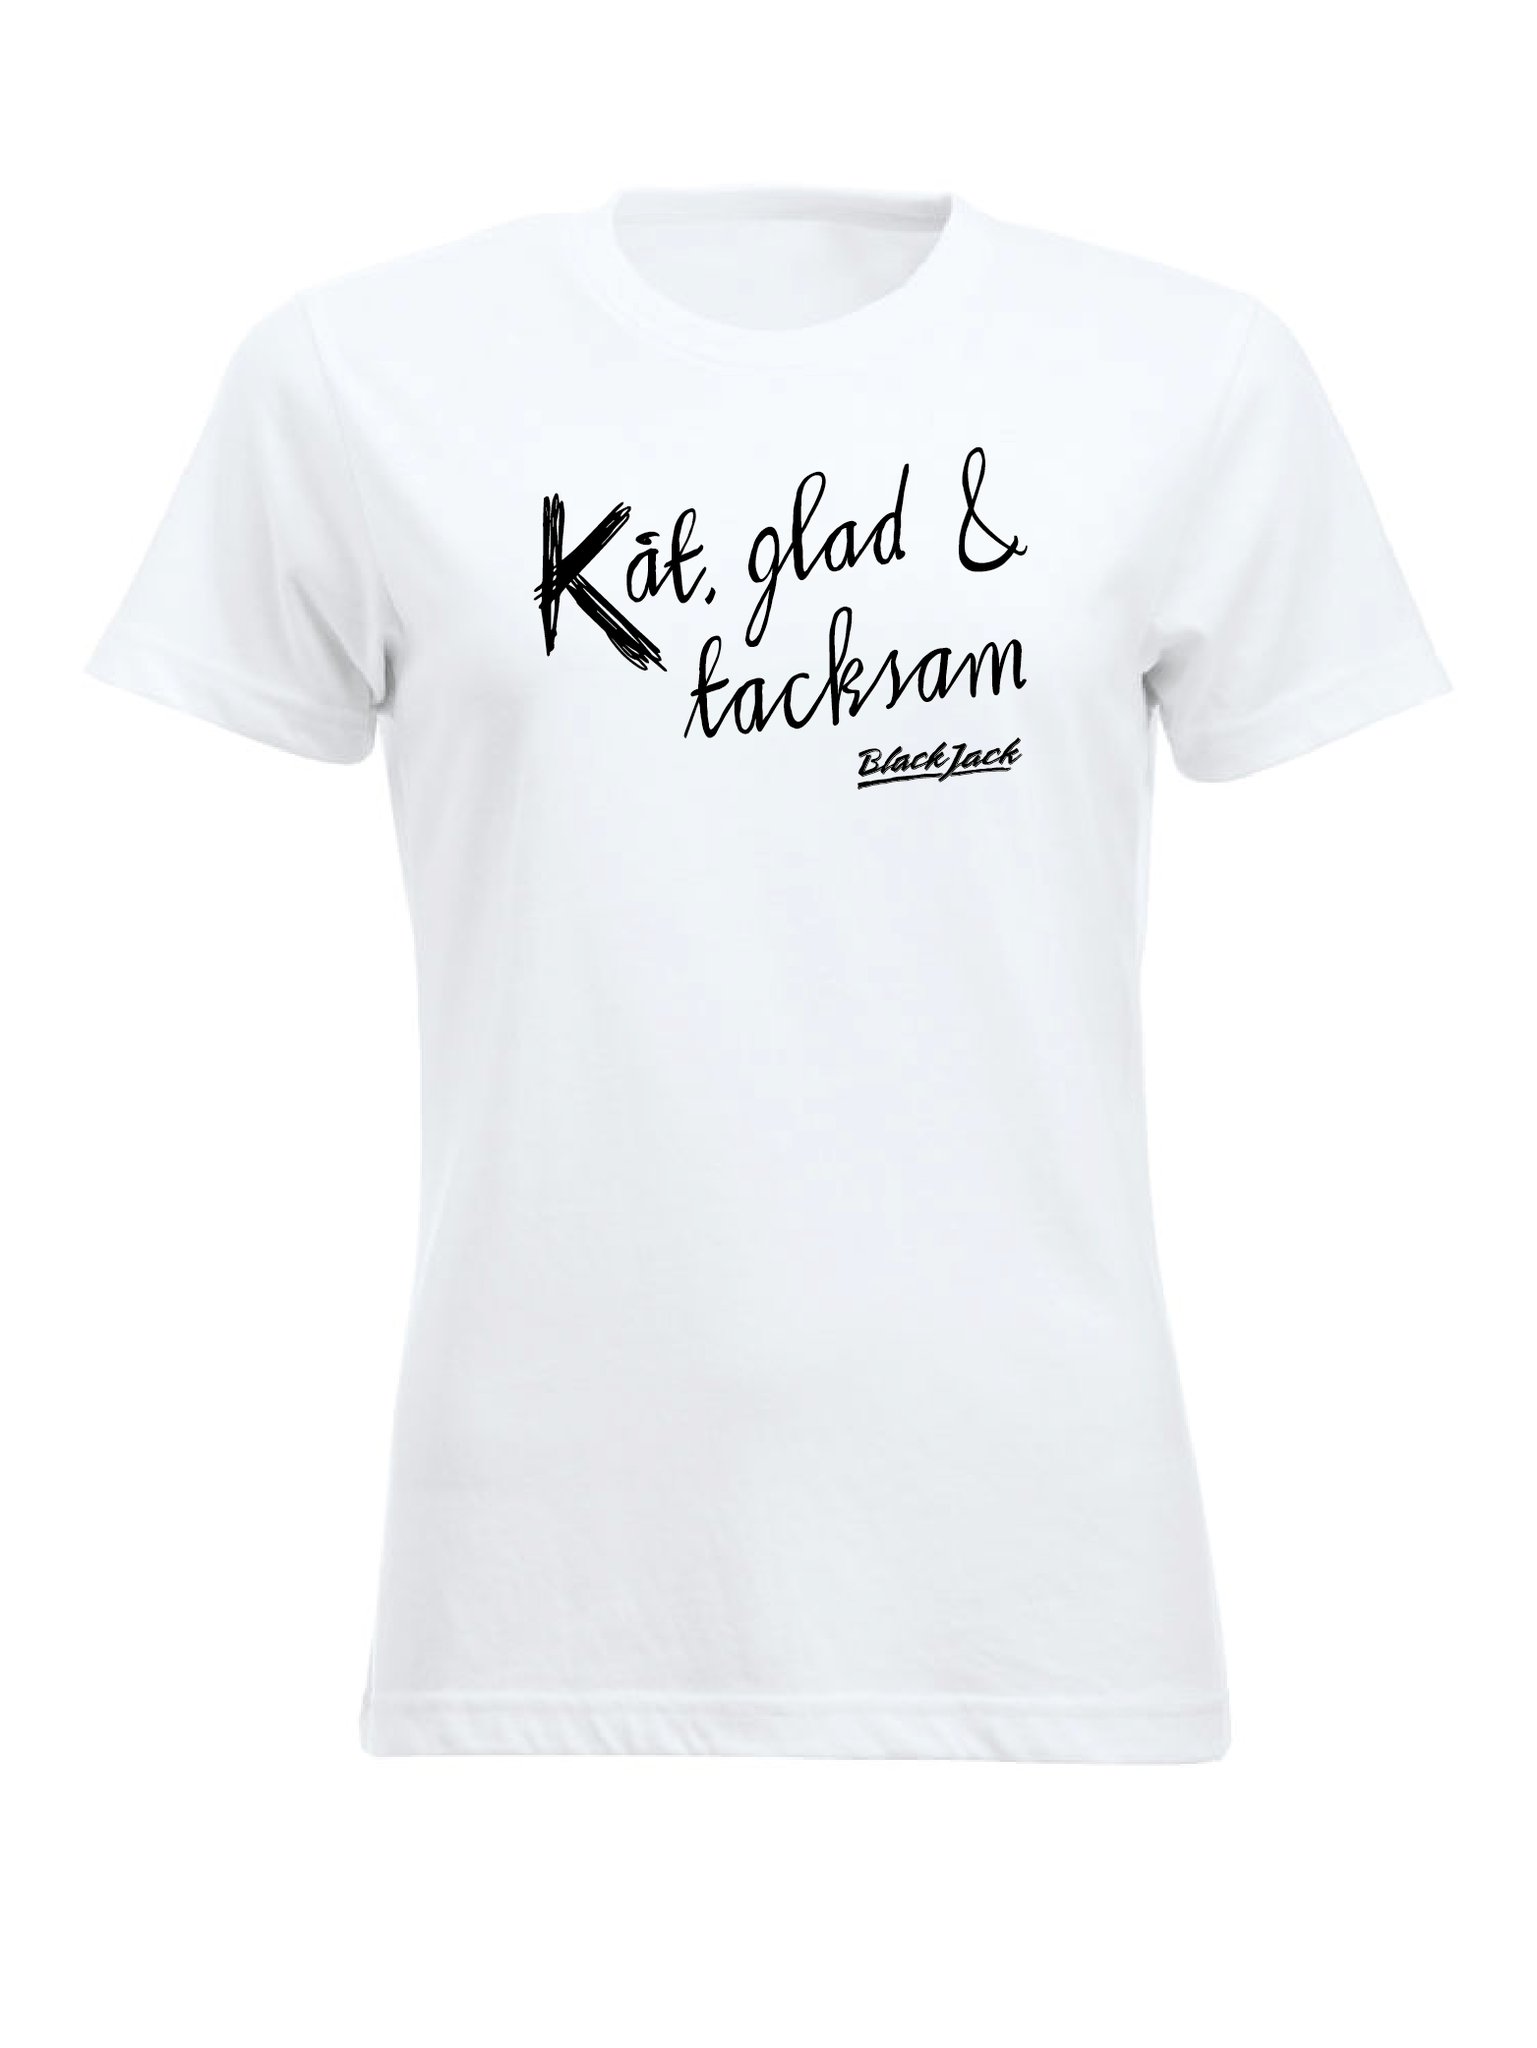 Vit Dam T-shirt "Black Jack Kåt, glad & tacksam"